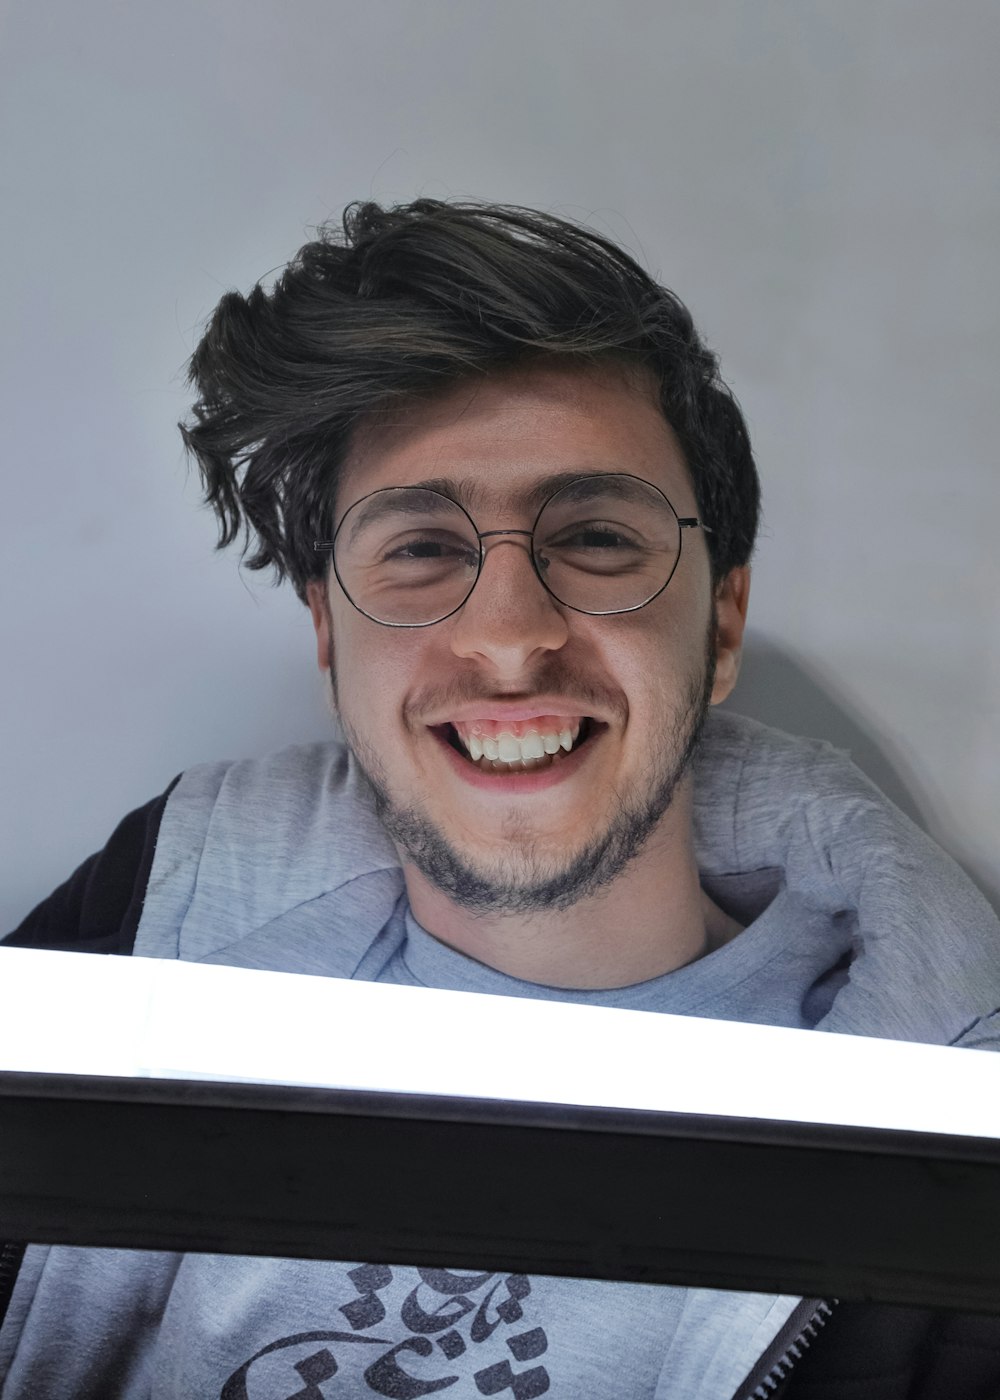 Un homme avec des lunettes et une chemise grise souriant